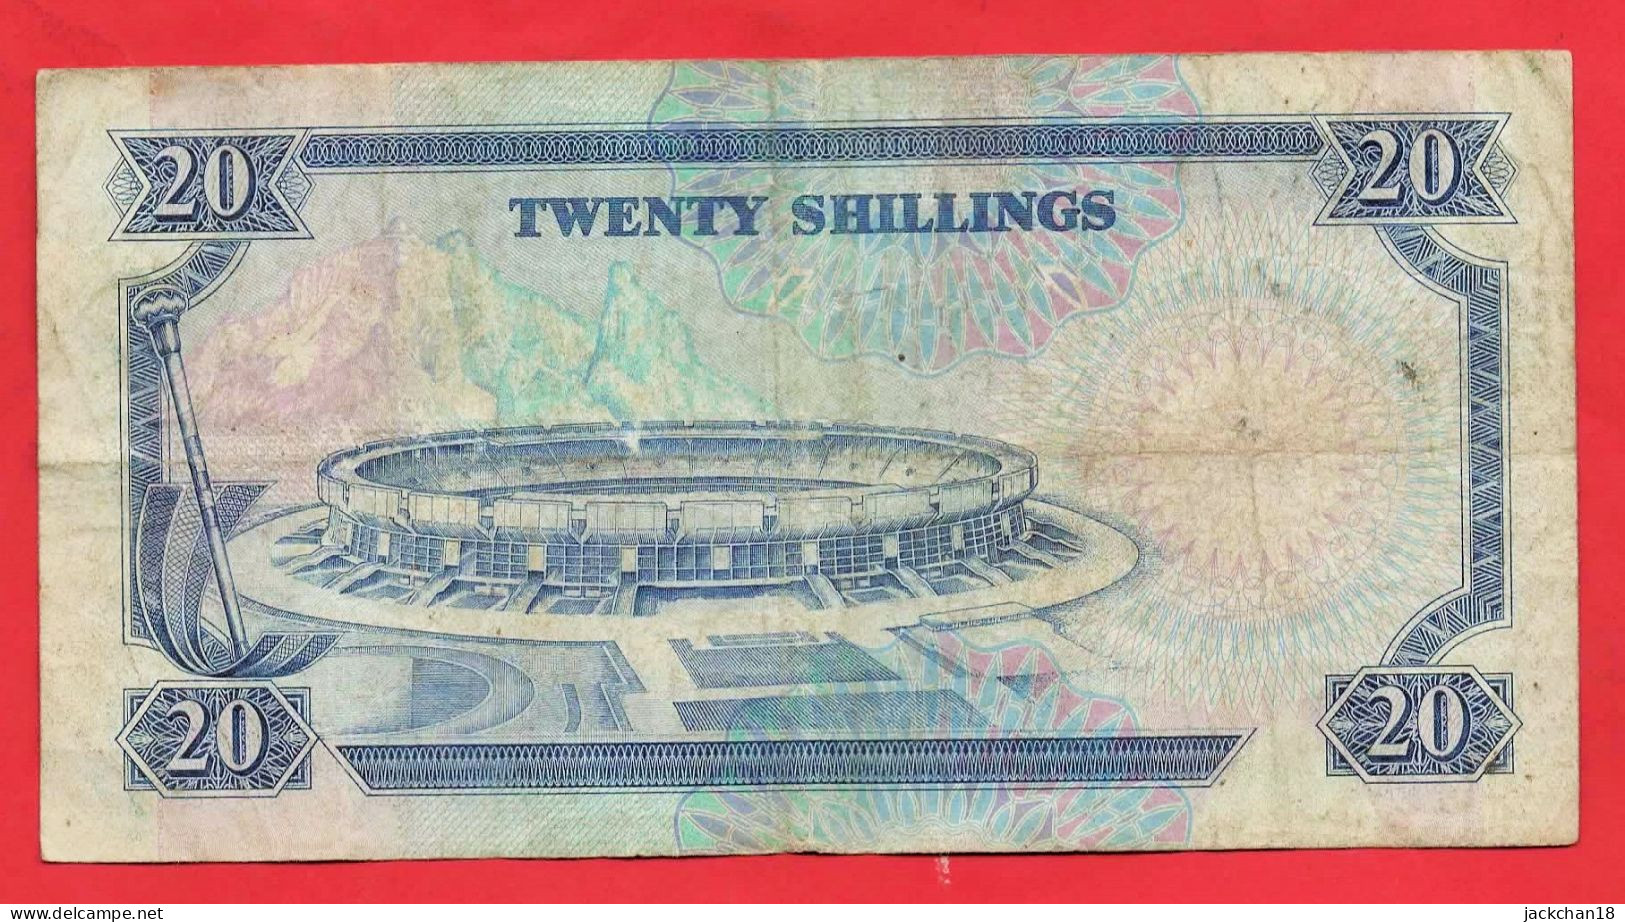 -- 20 SHILINGI ISHIRINI / CENTRAL BANK OF KENYA / Président De La République Du KENYA / 1991 -- - Kenya